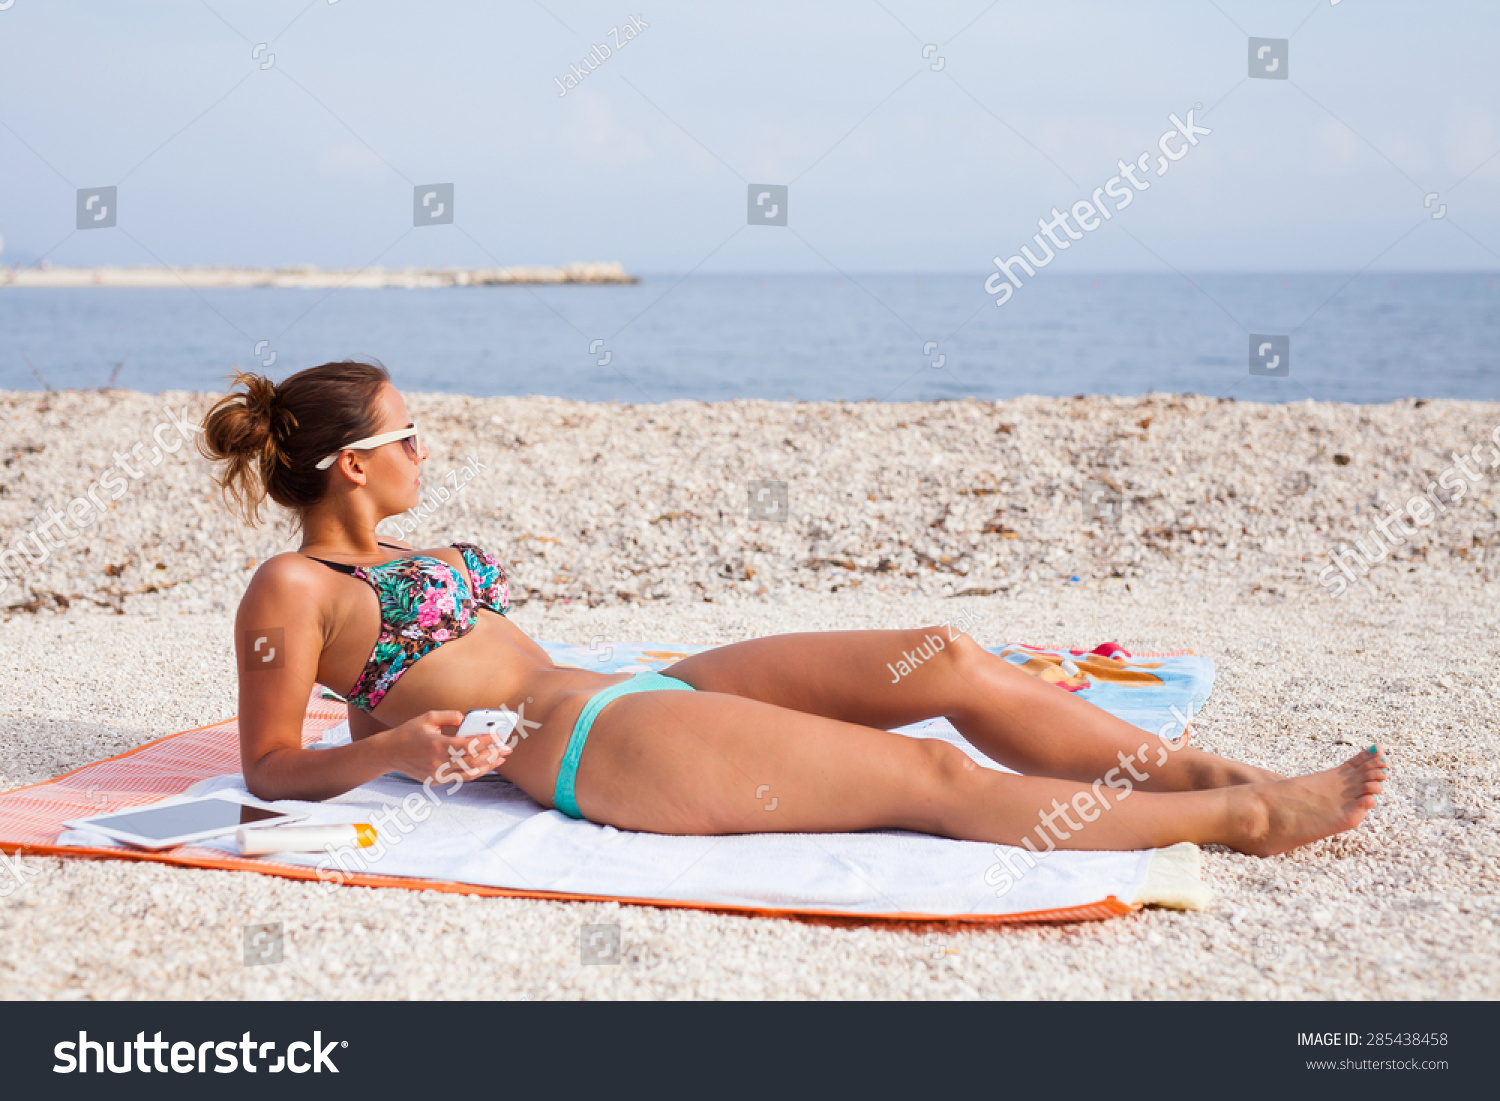 Pretty Girl Lying On Beach Sunbathing Foto Stok Shutterstock